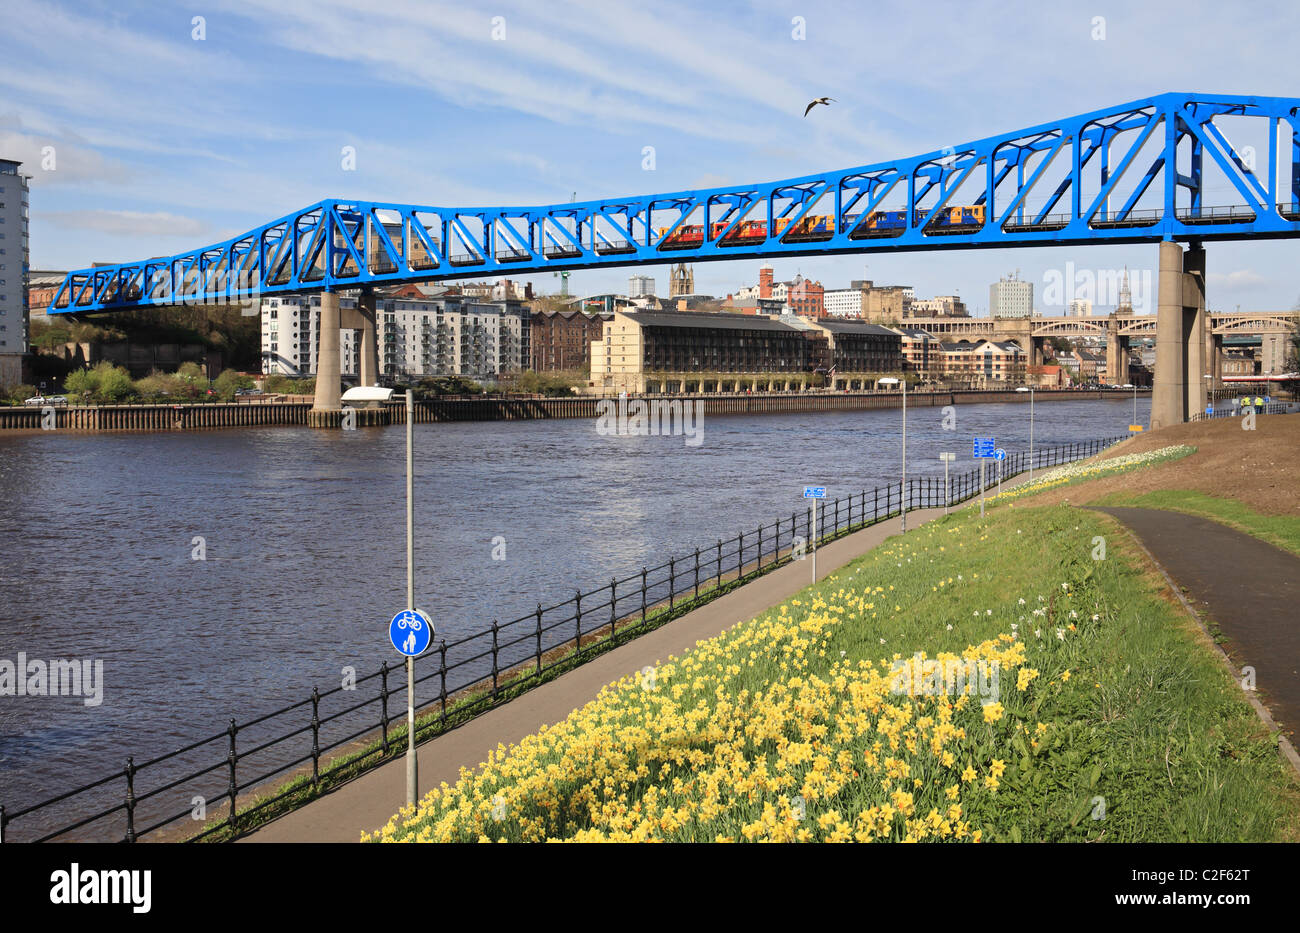 Un train de métro Tyne et Wear traverse la rivière Tyne et Gateshead entre Newcastle, Angleterre du Nord-Est, Royaume-Uni Banque D'Images